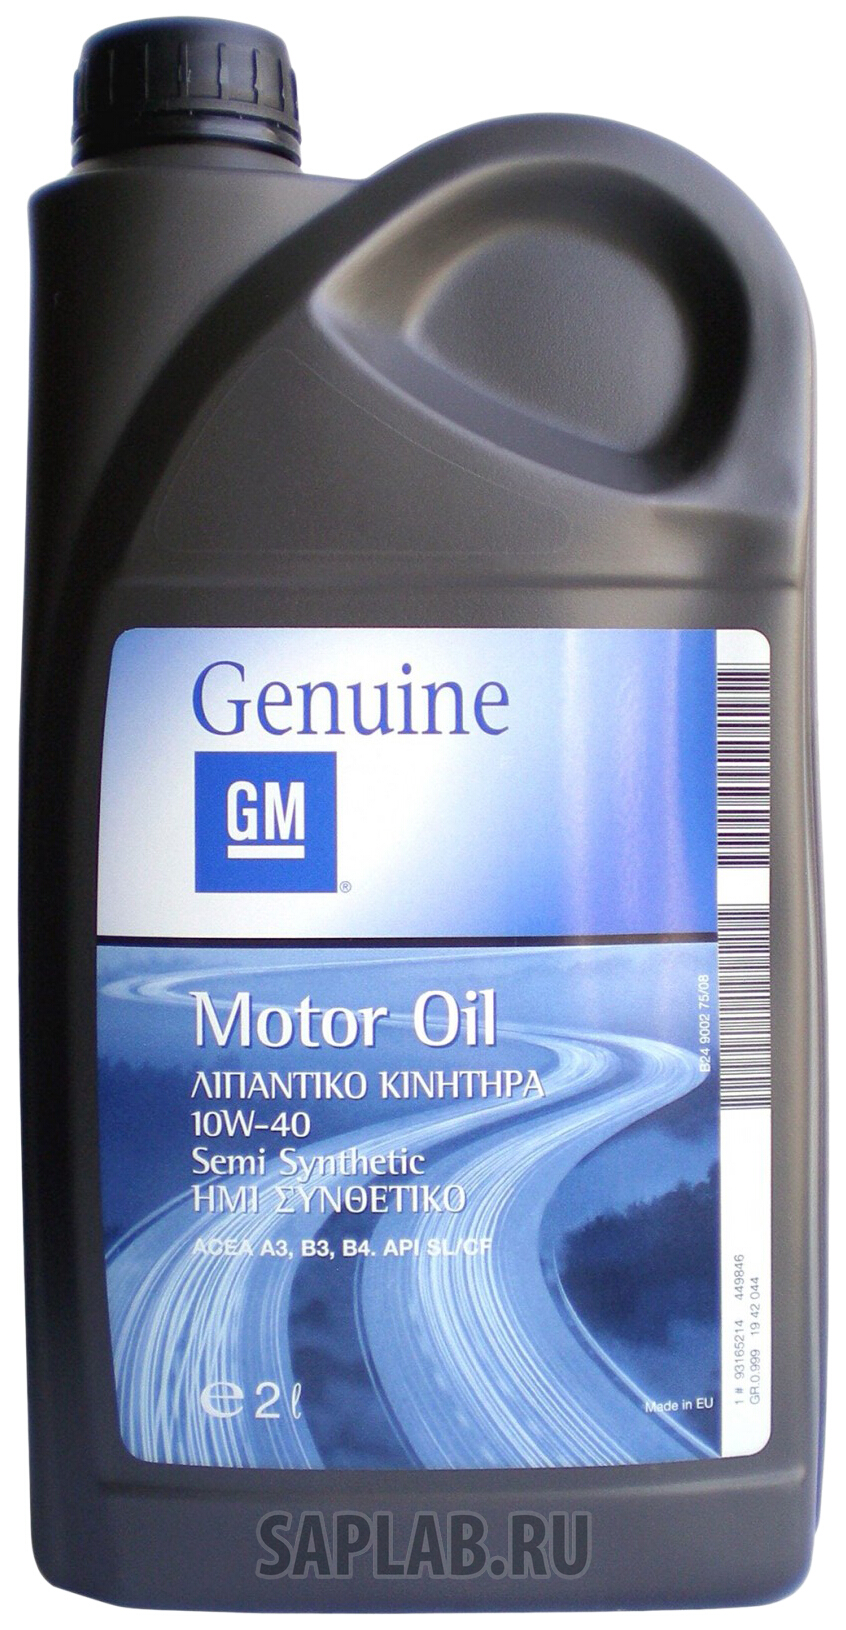 Купить запчасть GENERAL MOTORS - 1942044 Motor Oil Semi Synthetic